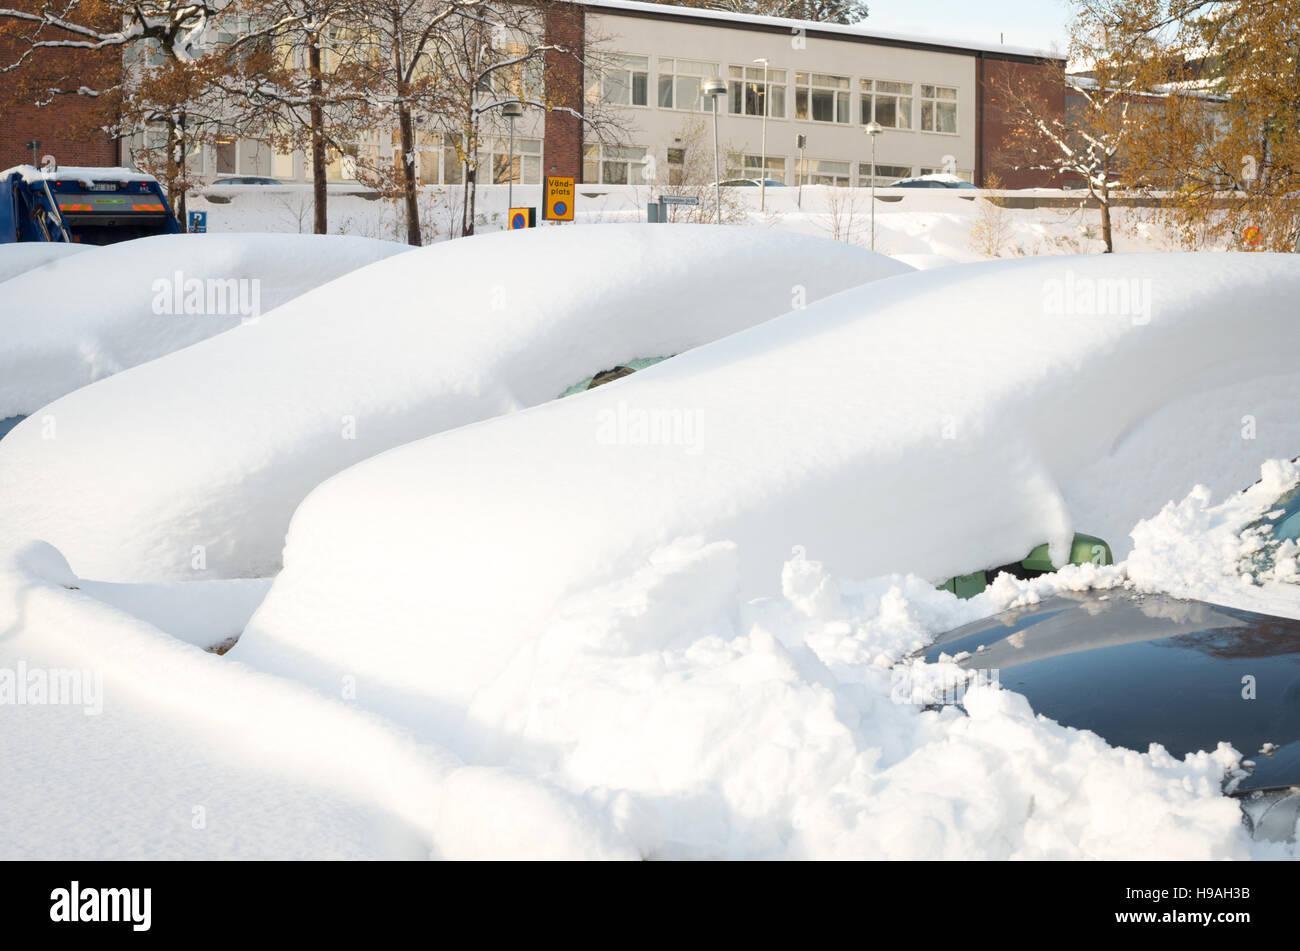 Los coches aparcados cubiertos de nieve después de una tormenta de nieve a principios de noviembre Foto de stock